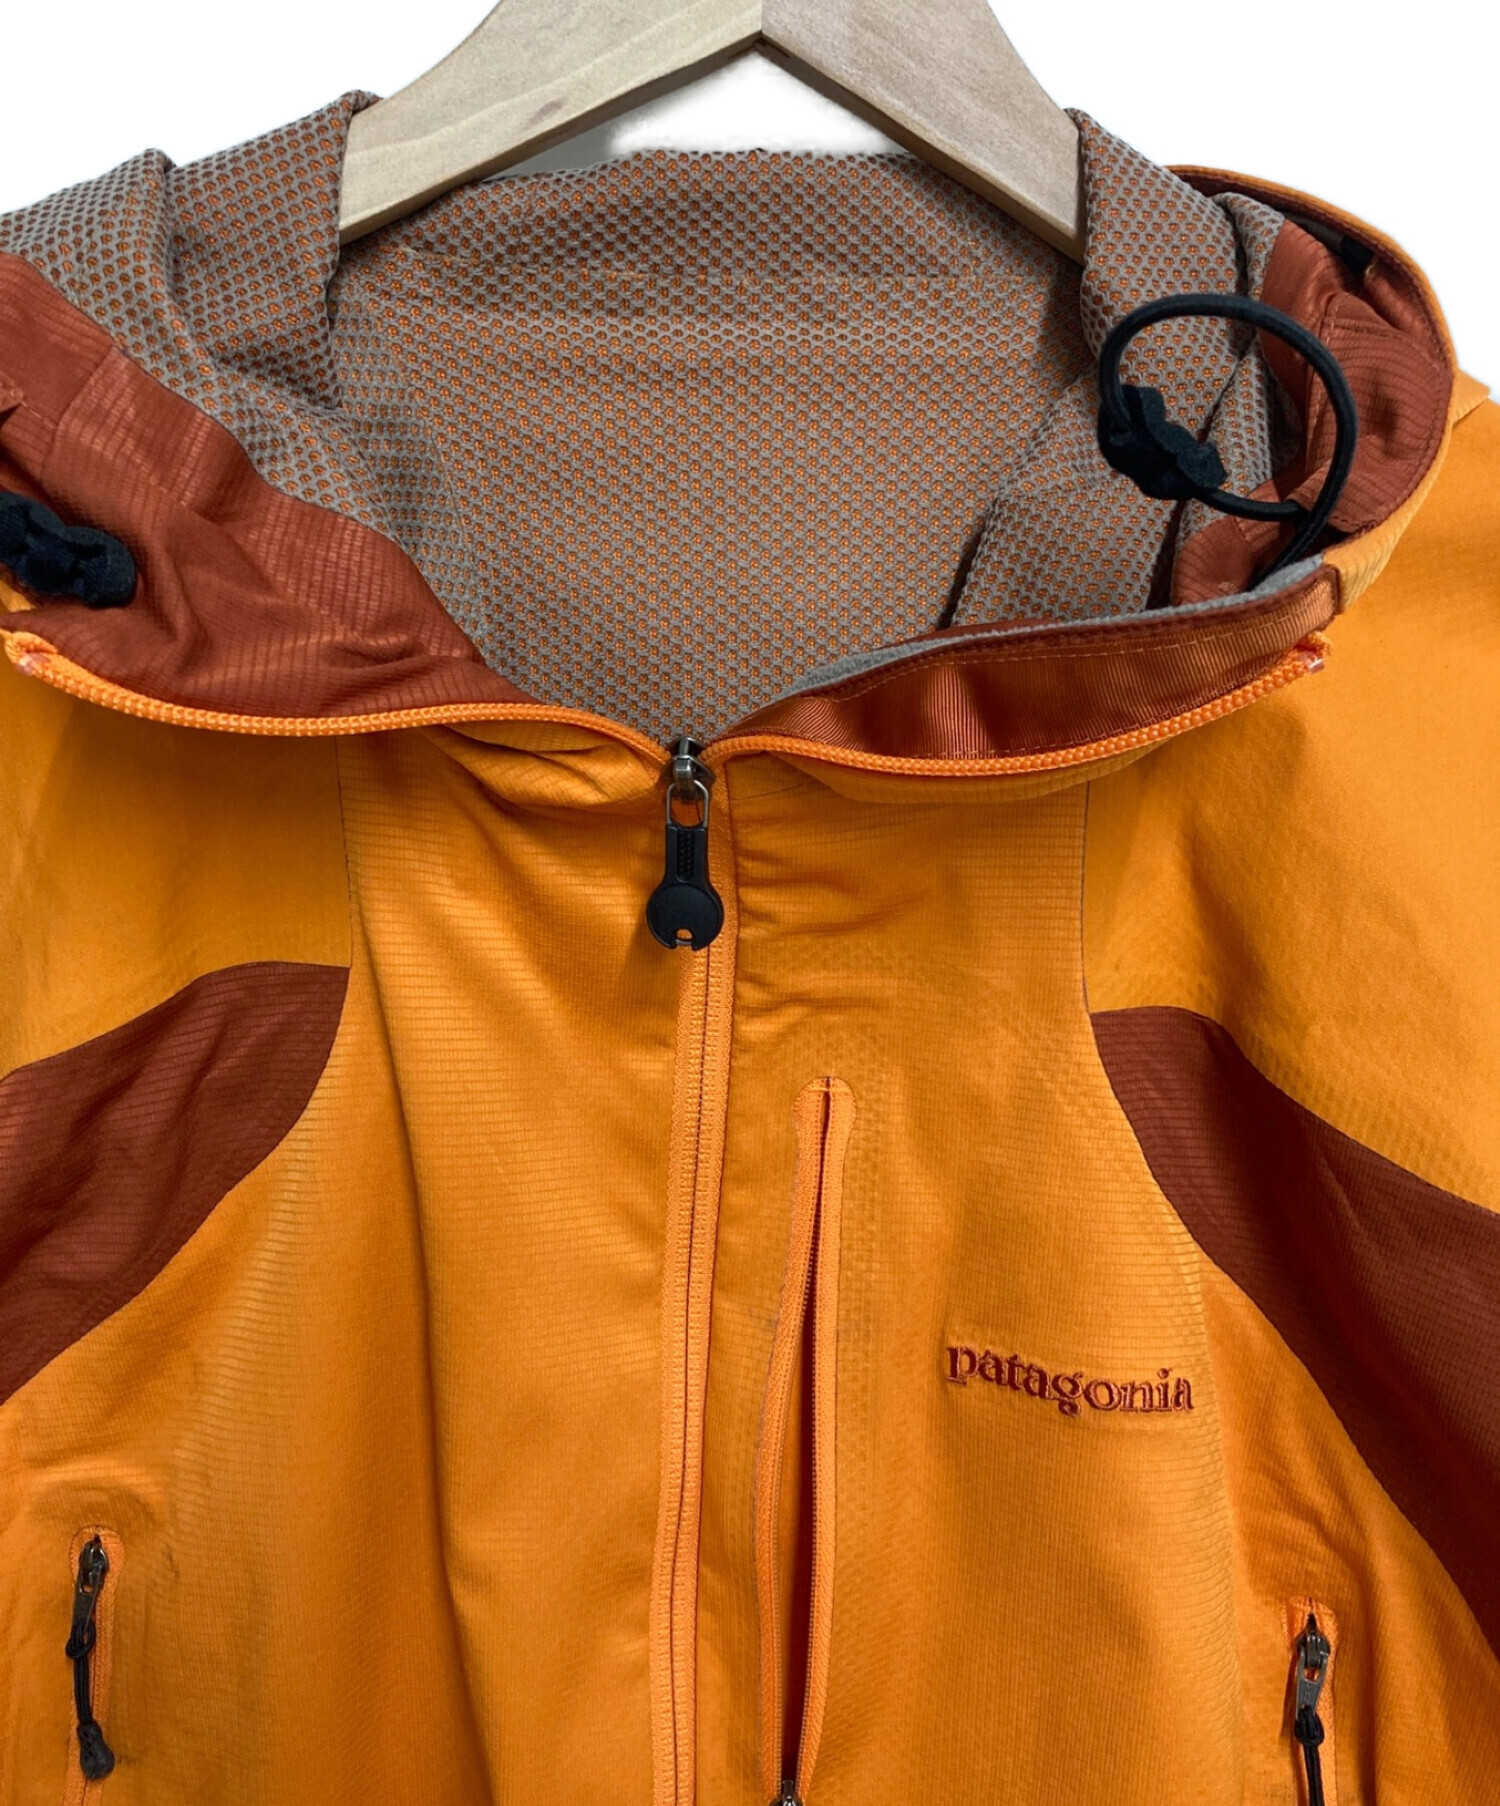 Patagonia (パタゴニア) ディメンション ジャケット ブラウン×オレンジ サイズ:M